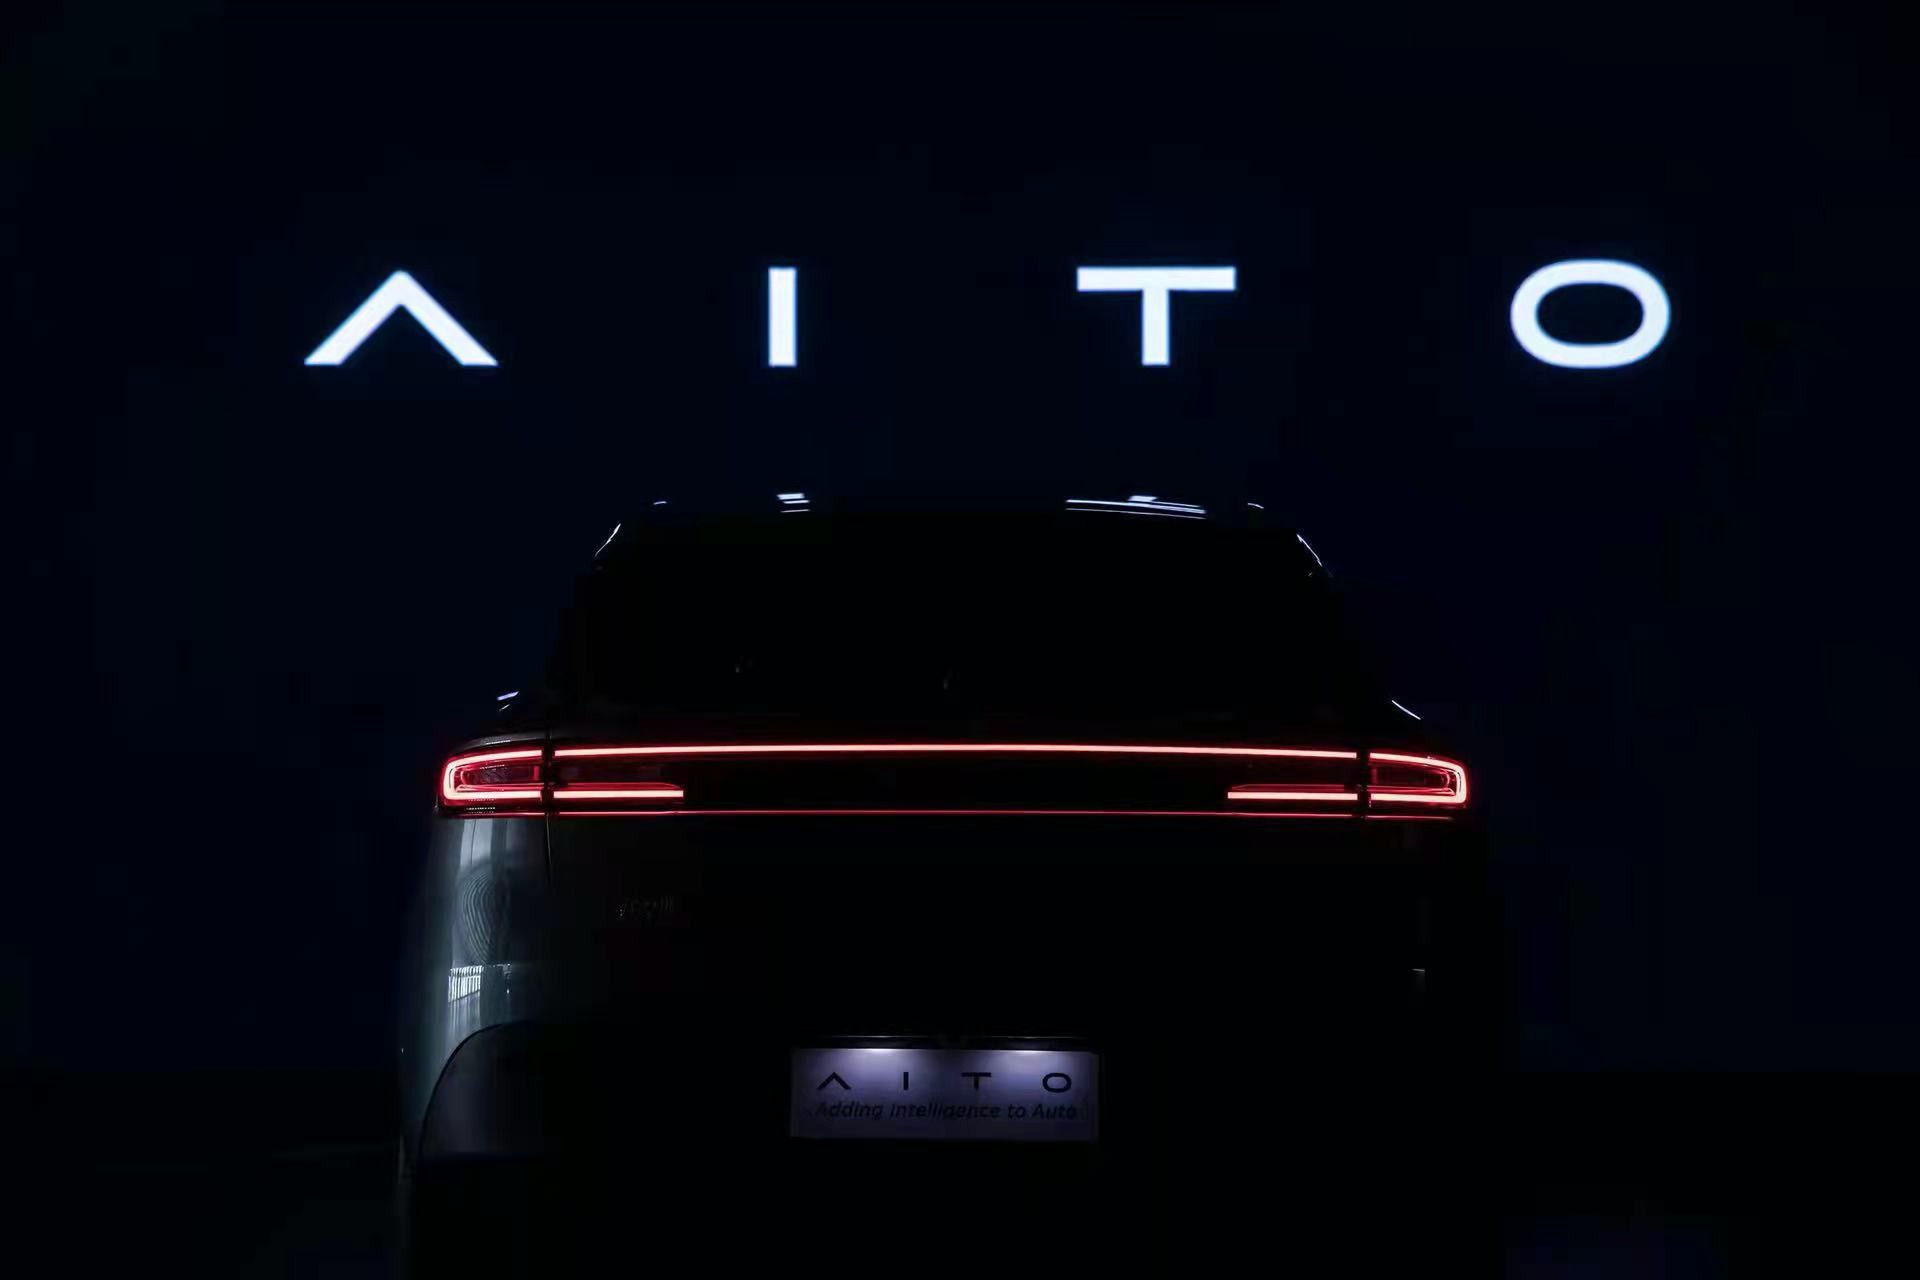 赛力斯全新高端品牌AITO正式发布 首款车型问界M5亮相